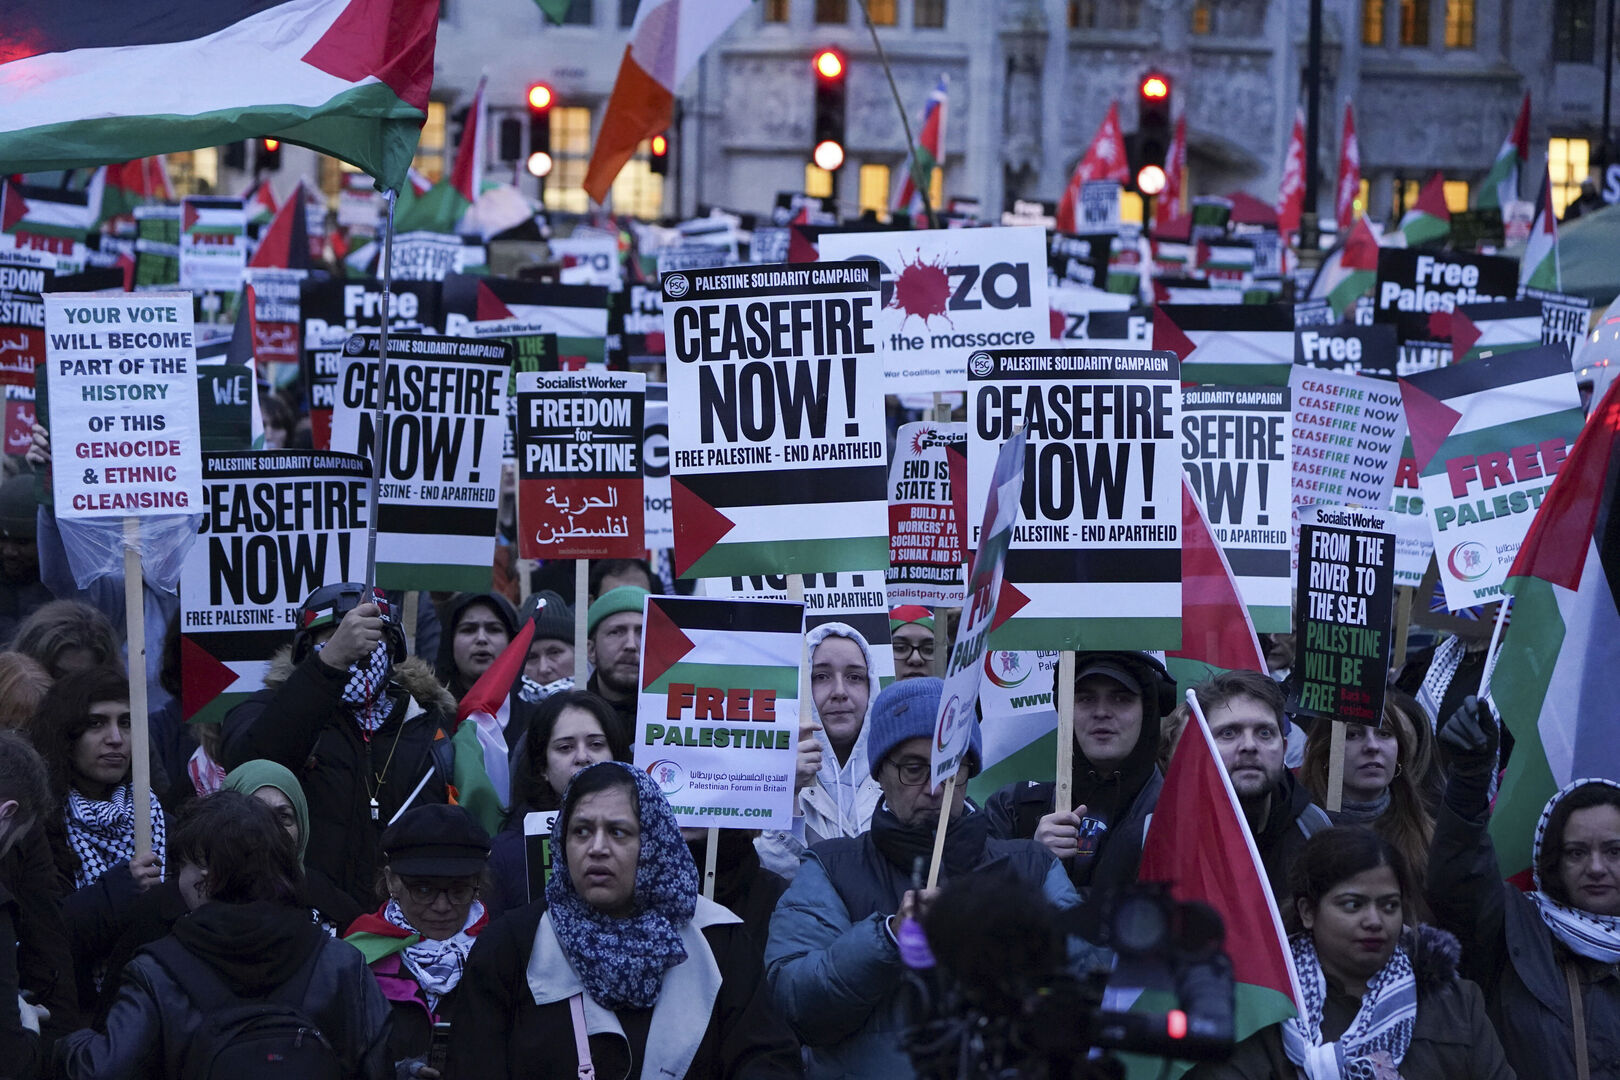 فوضى في مجلس العموم البريطاني أثناء التصويت على 3 قرارات بشأن غزة (فيديو)